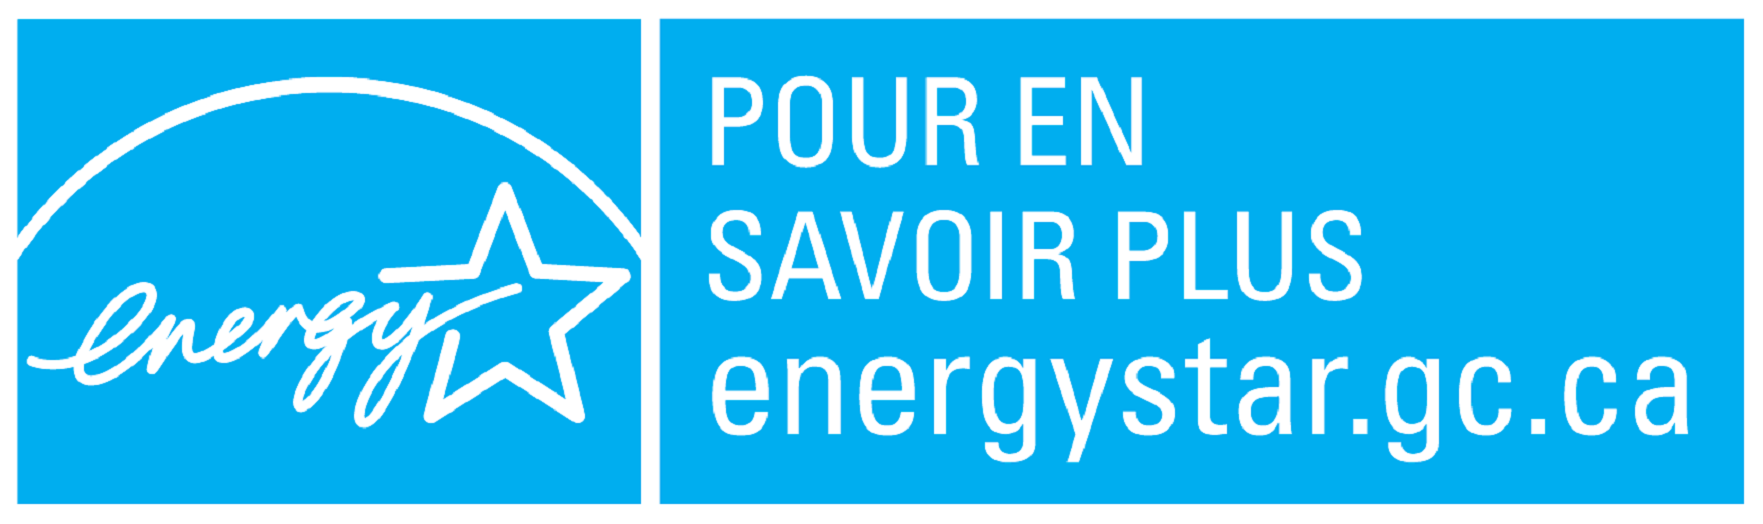 Le symbol POUR EN SAVOIR PLUS energystar.gc.ca, horizontal bleu (cyan)